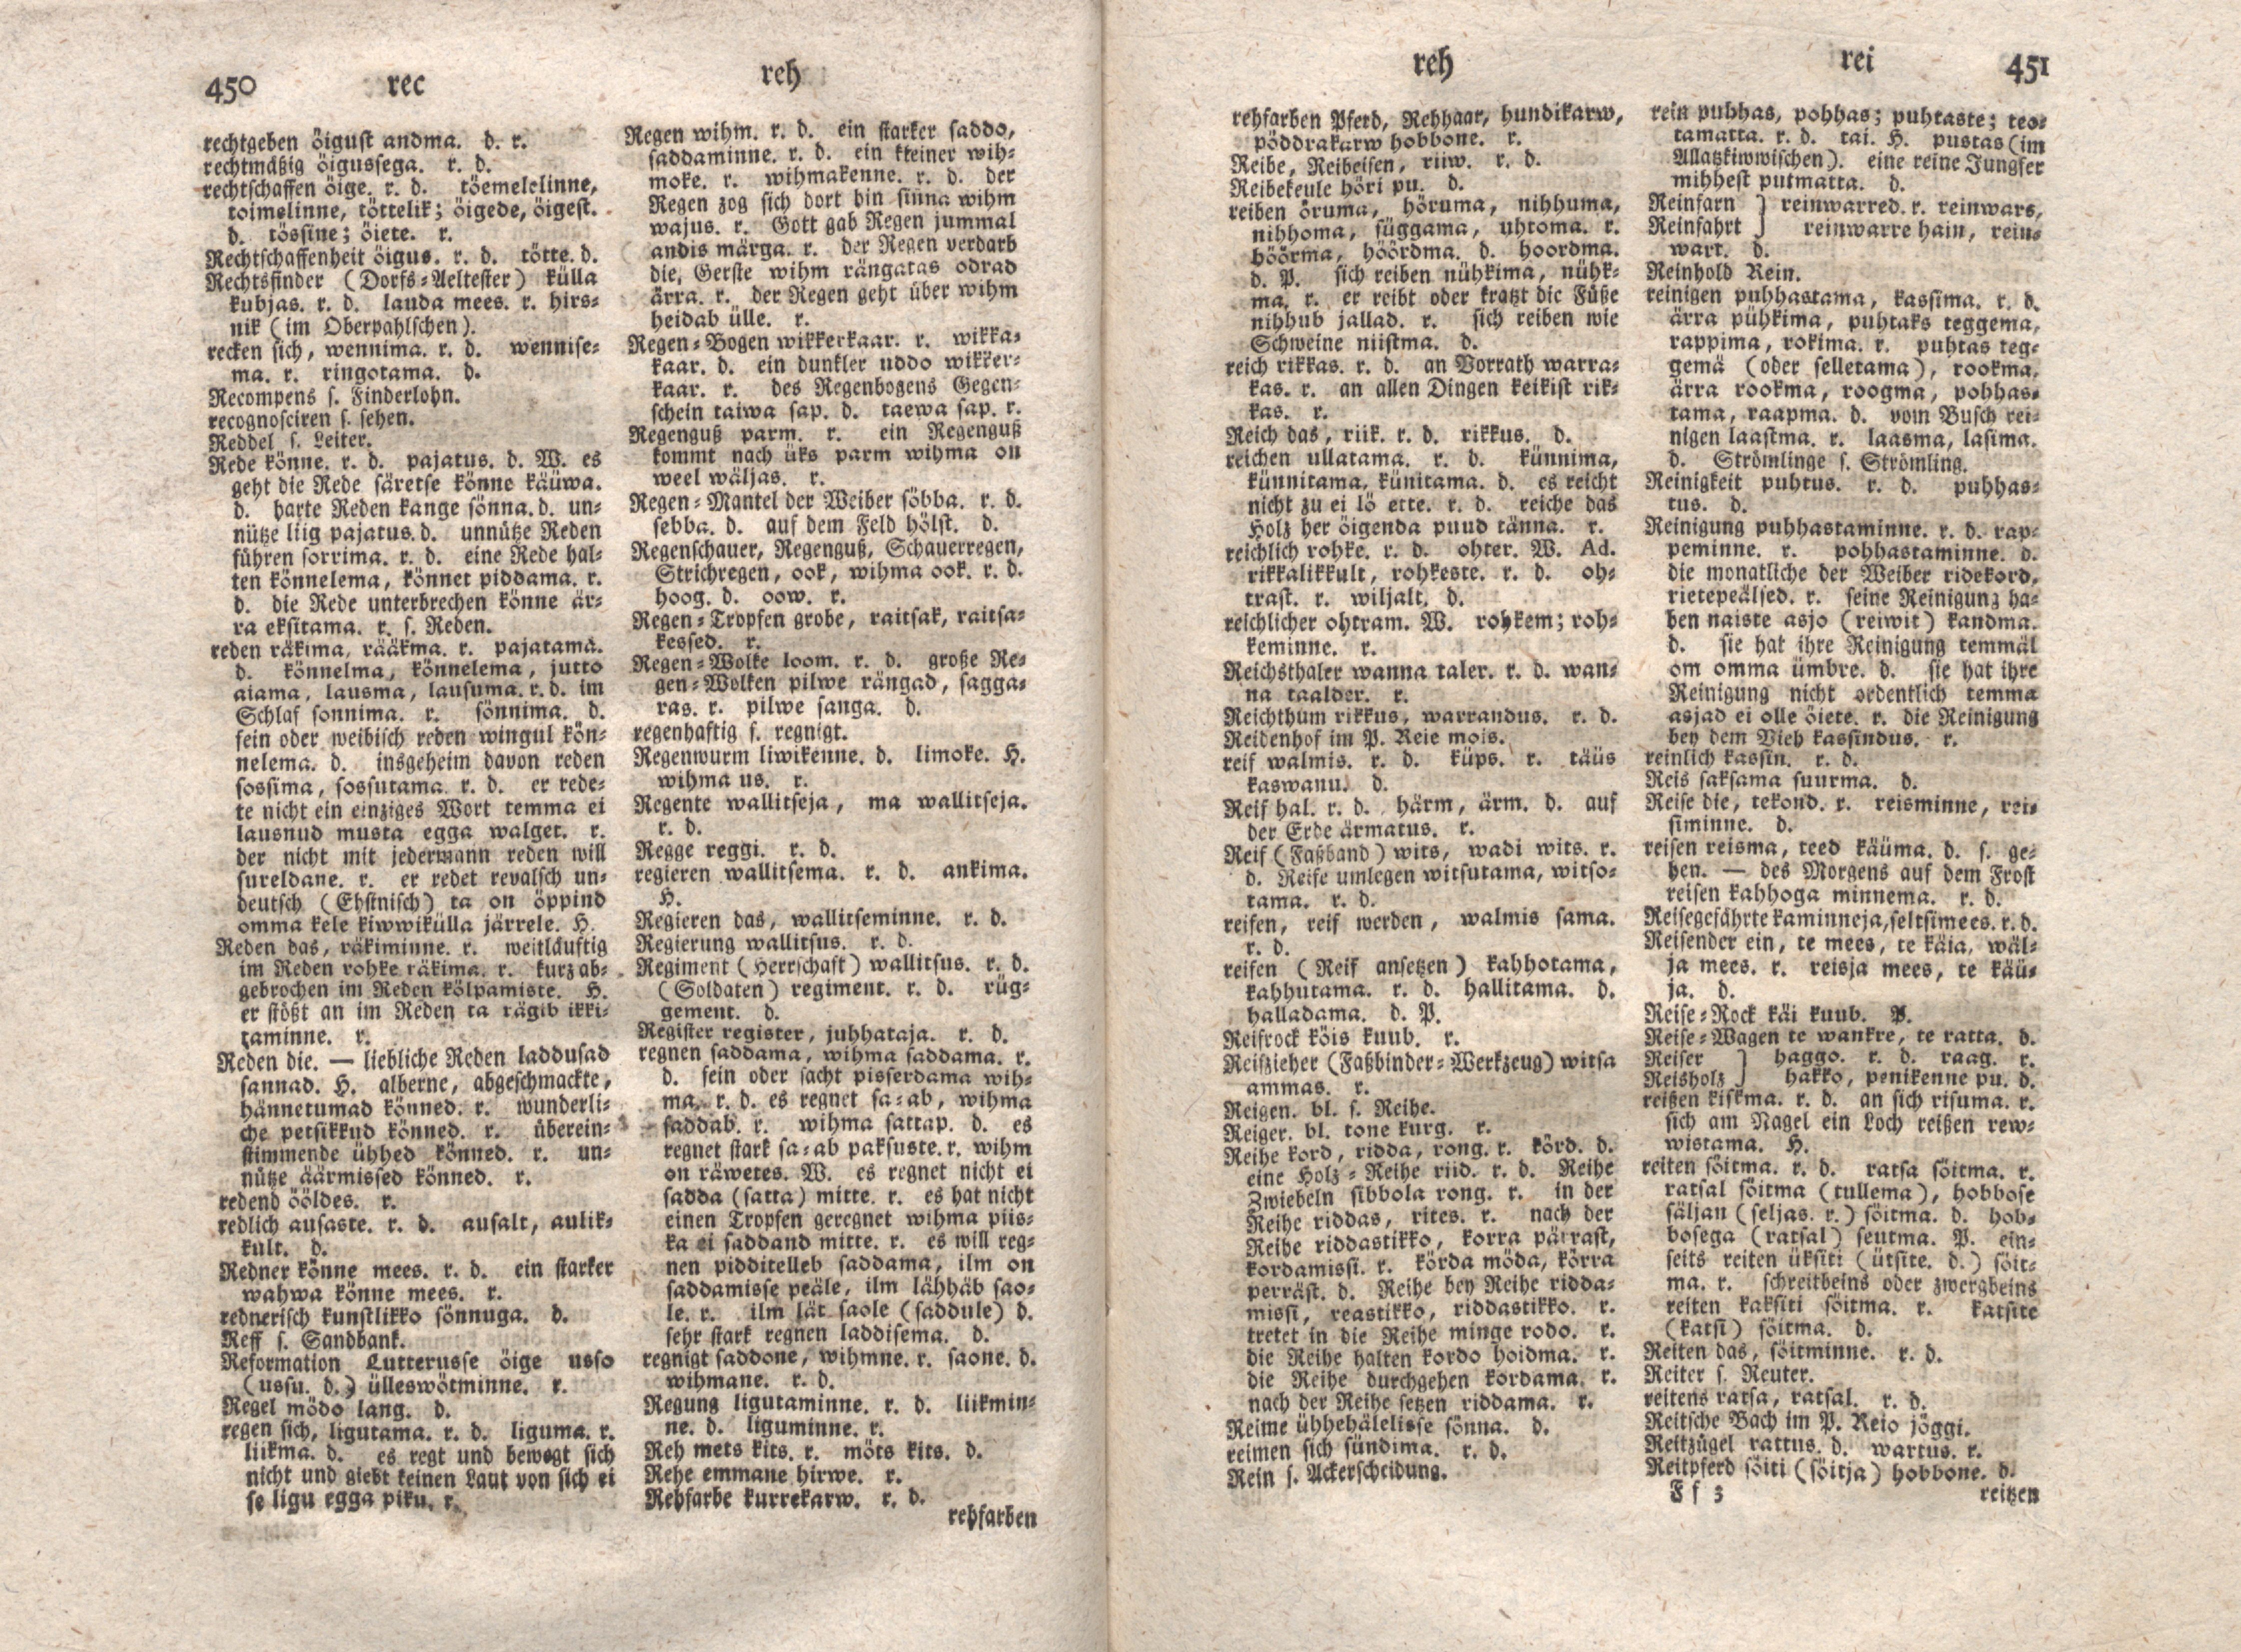 Ehstnische Sprachlehre für beide Hauptdialekte (1780) | 236. (450-451) Основной текст